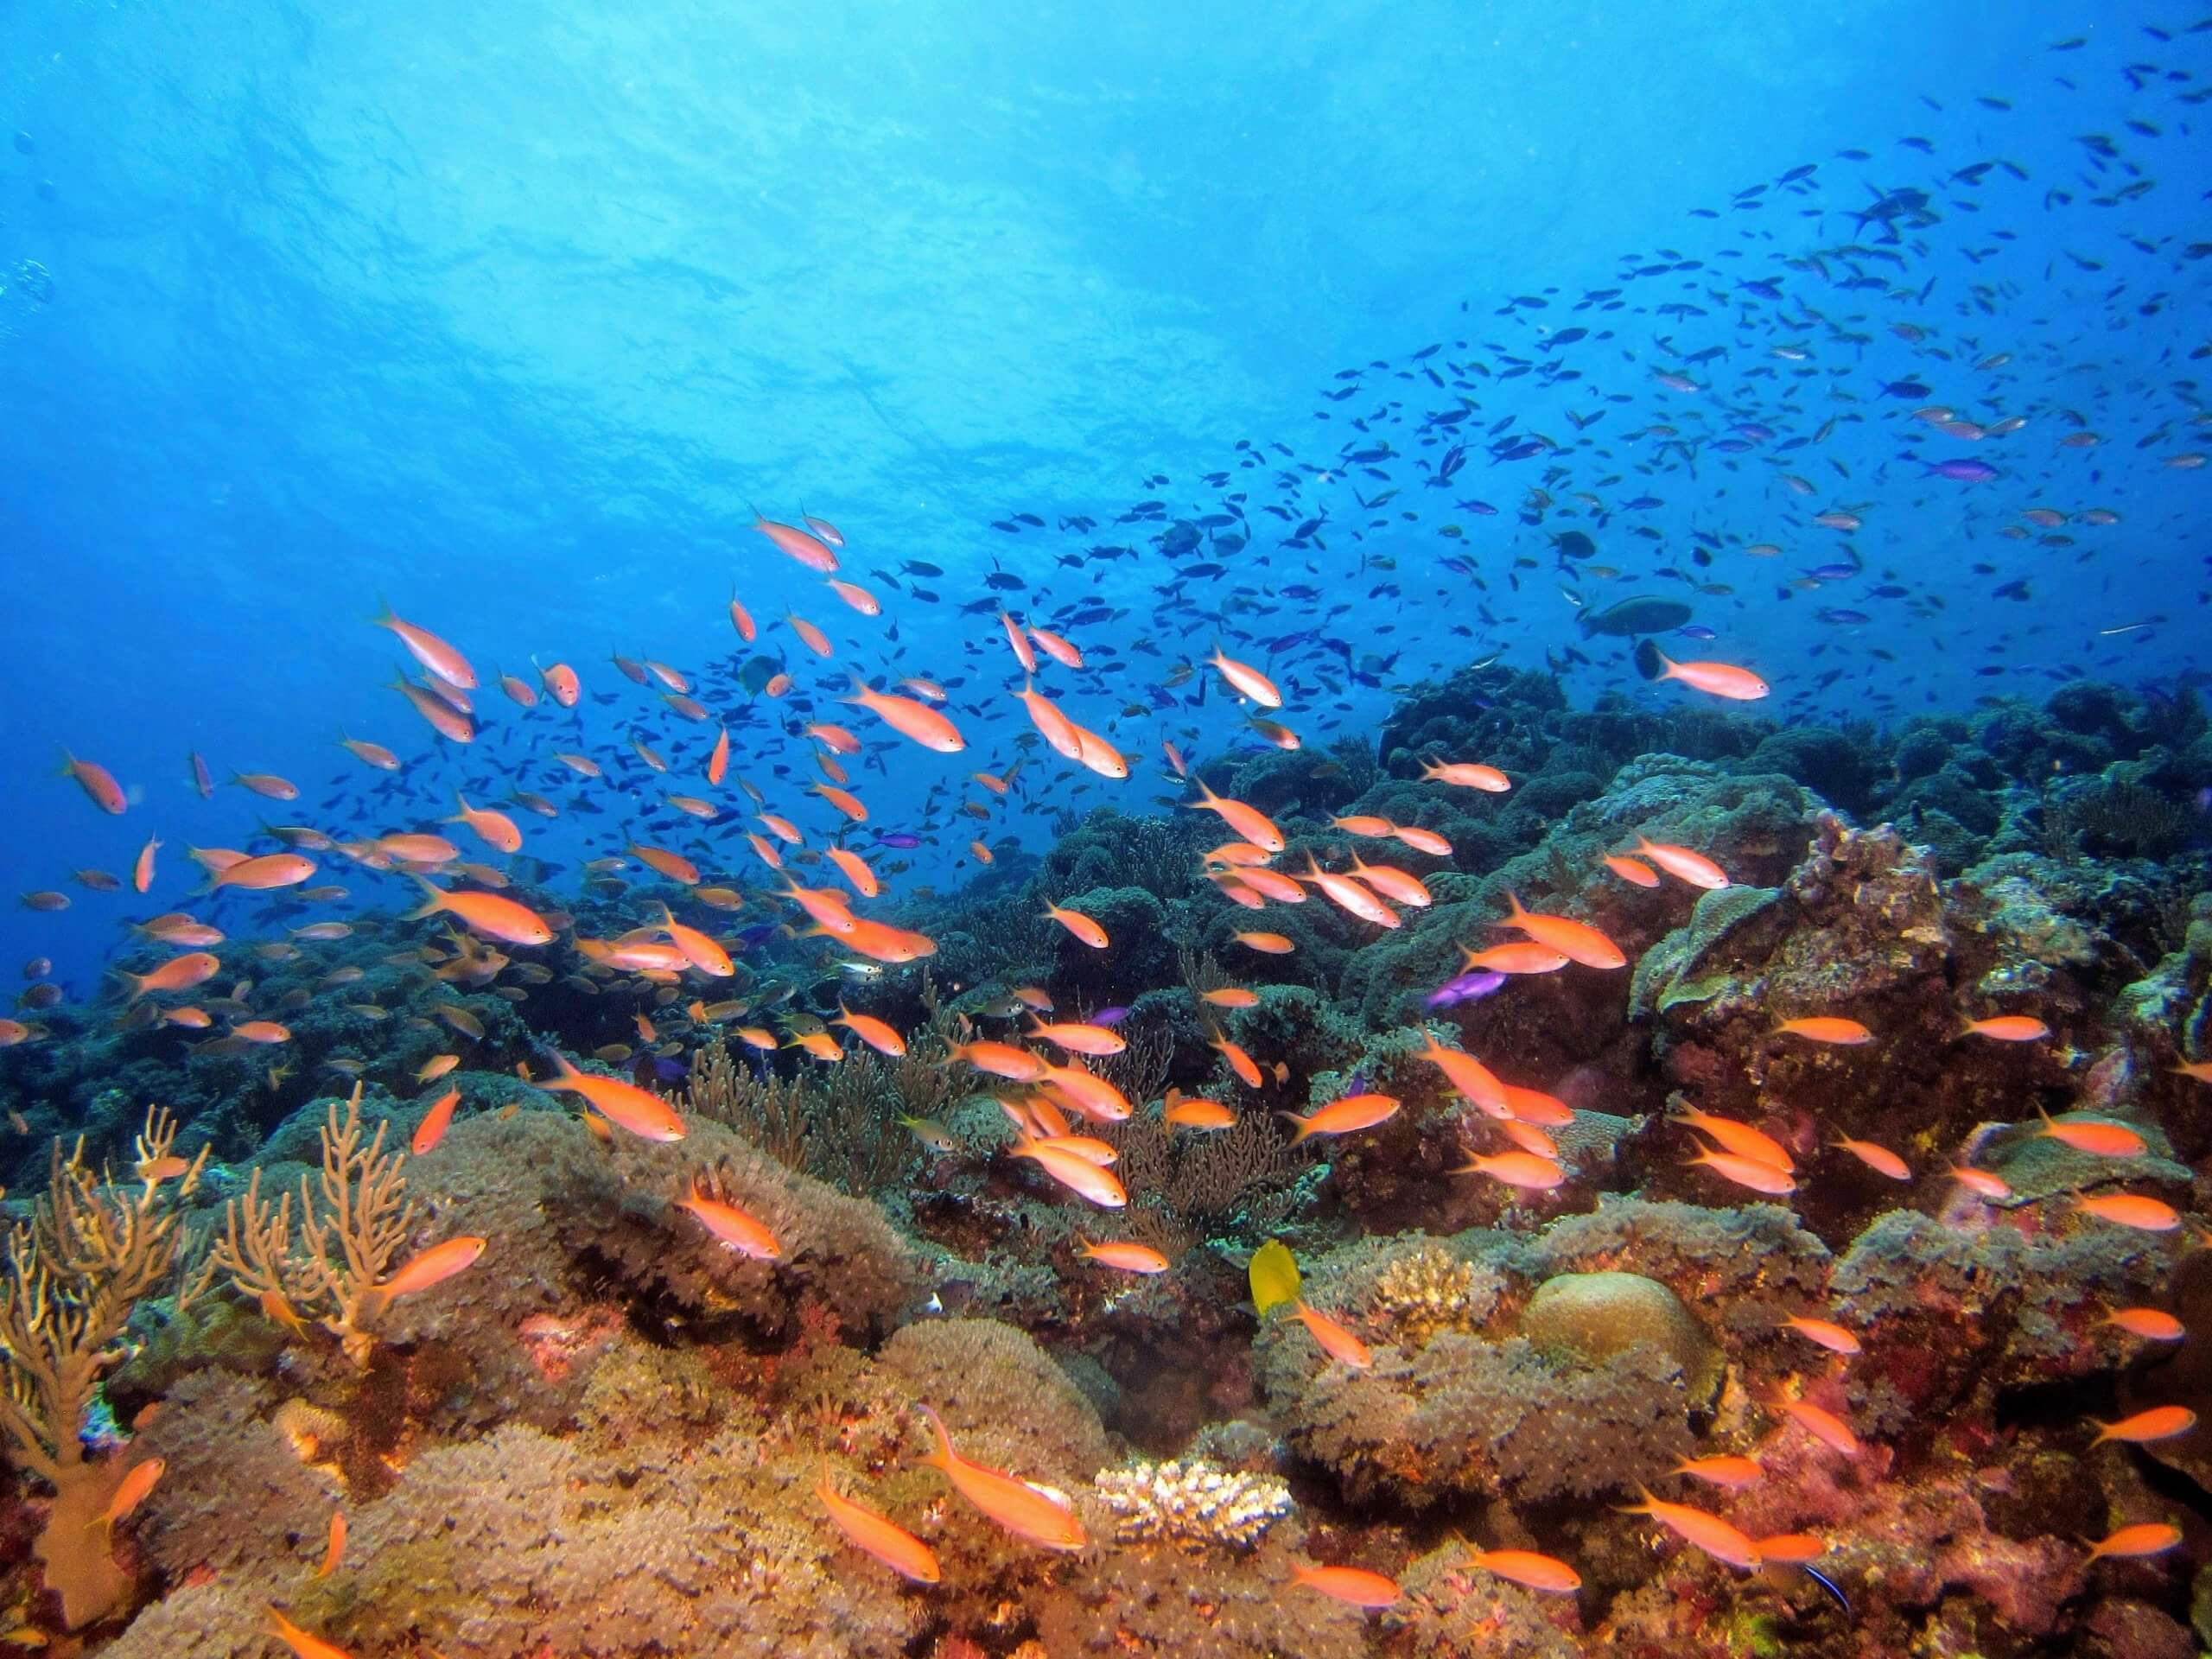 أظهر حوالي ثلثي الشعاب المرجانية في الجزء الأوسط والشمالي من الحاجز المرجاني أفضل علامات التعافي منذ 36 عامًا. تصوير هيروكو يوشي على Unsplash